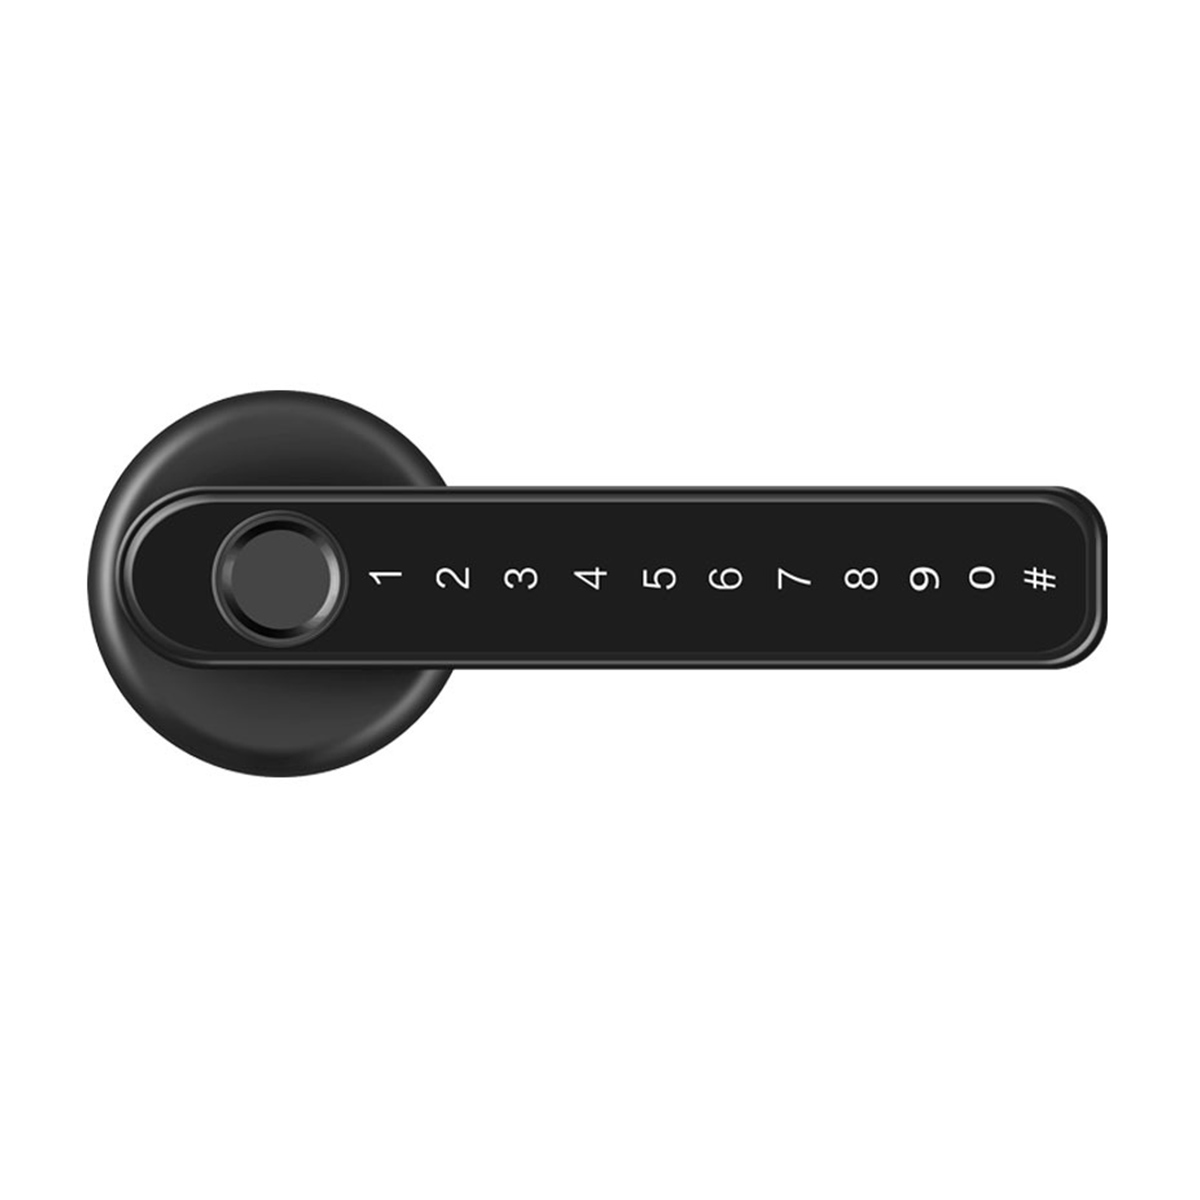 Fingerprint-Door-Lock-Digital-Password-Smart-Entry-Bluetooth-Key-APP-Security-1964045-16